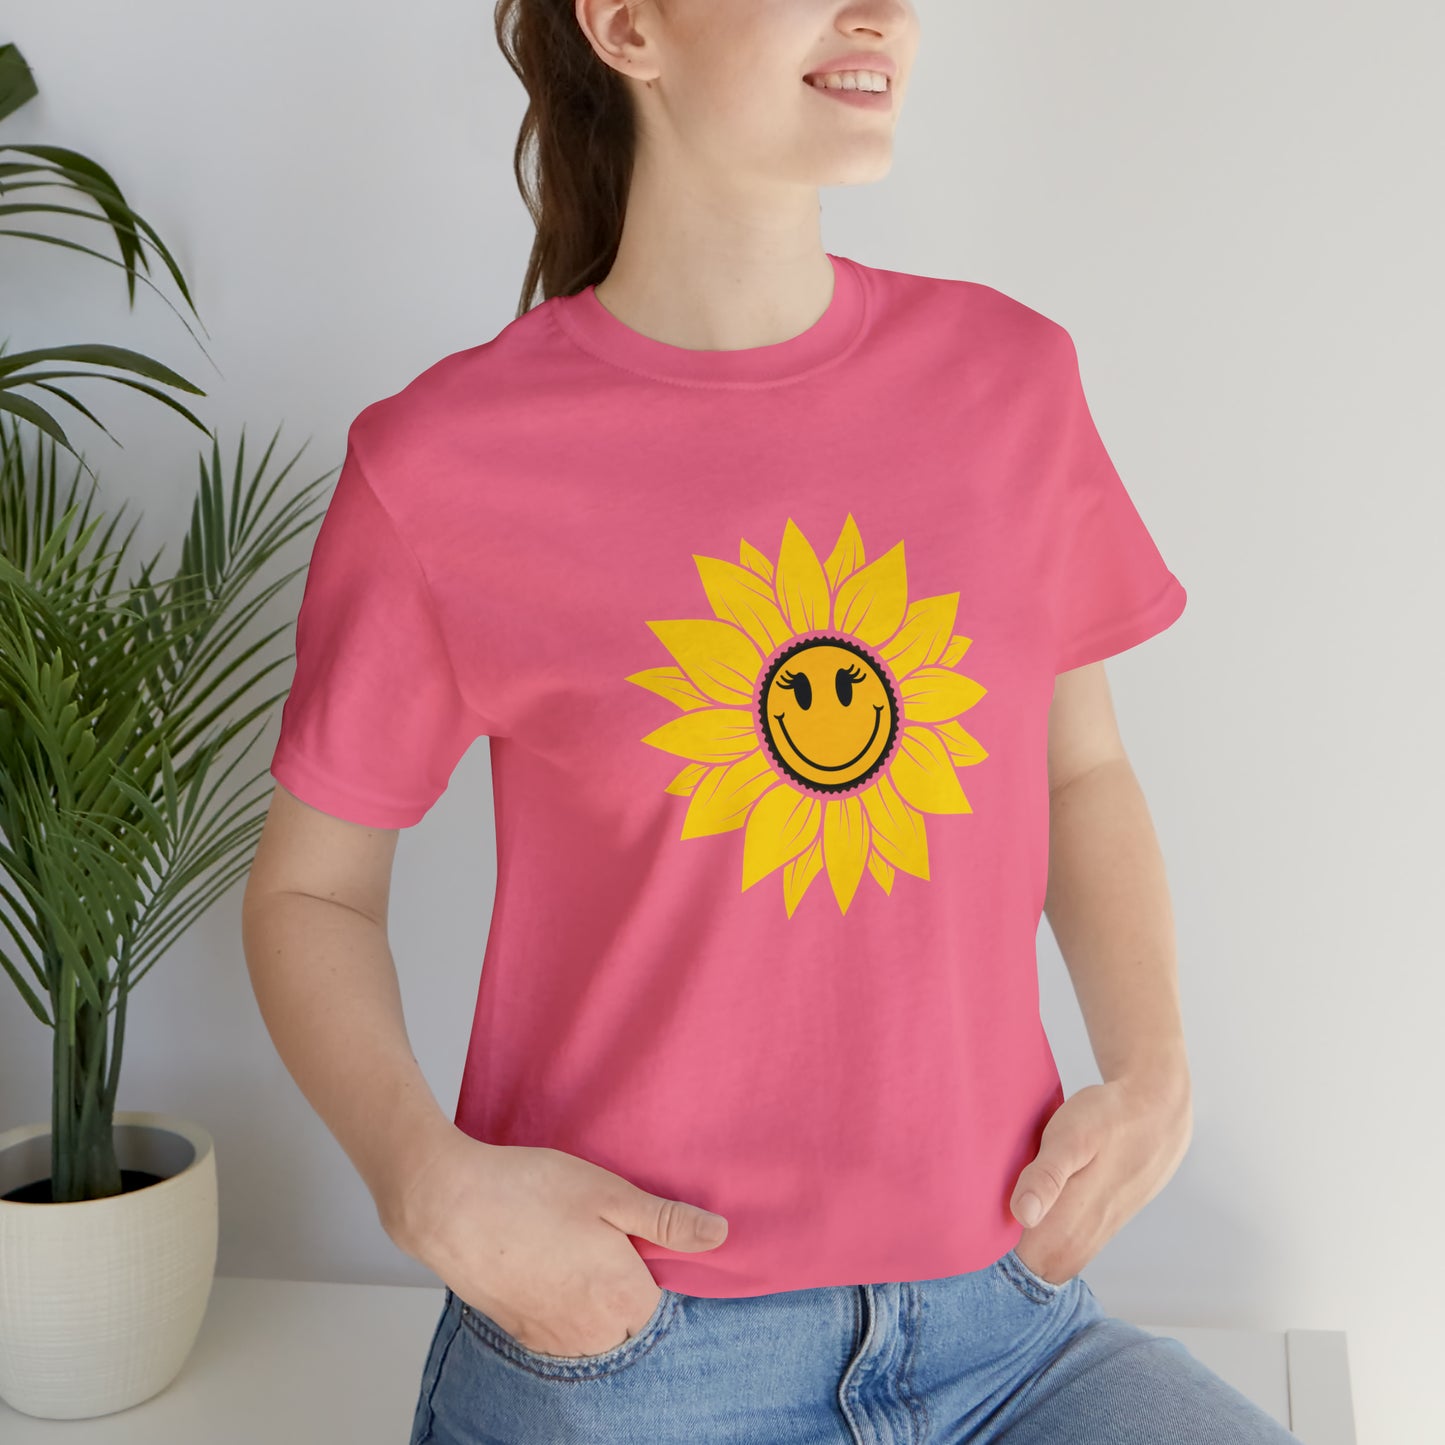 Positive, Sunflower, Nature, Gardens, Flowers, Garden- Adult, Regular Fit, Soft Cotton, T-shirt